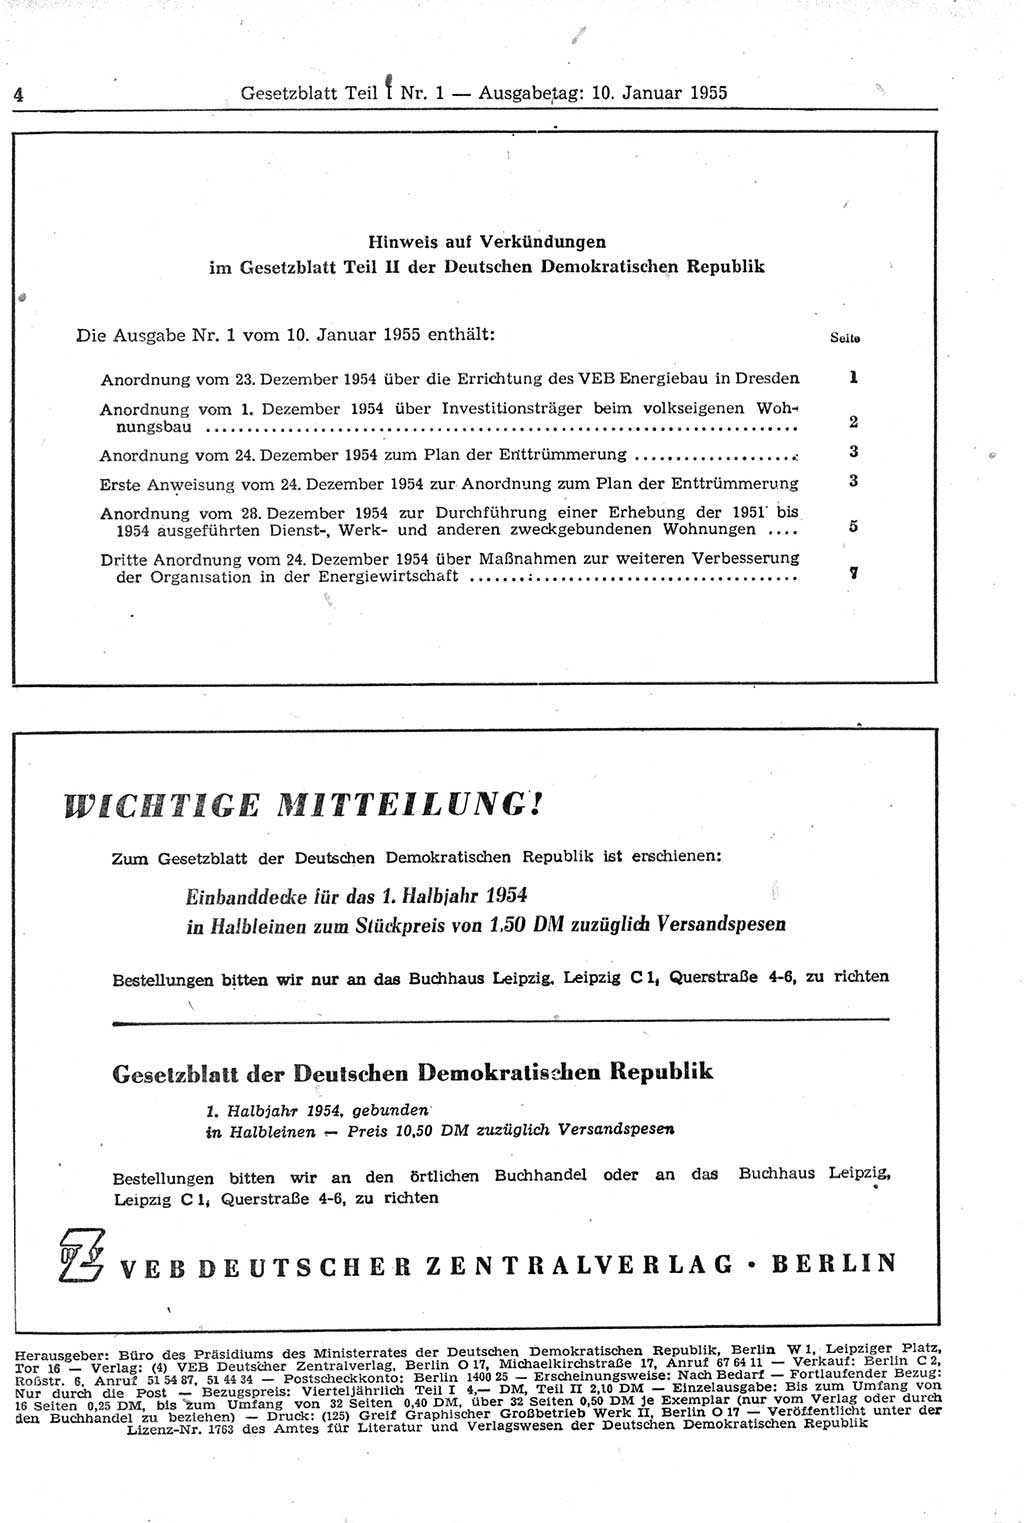 Gesetzblatt (GBl.) der Deutschen Demokratischen Republik (DDR) Teil Ⅰ 1955, Seite 4 (GBl. DDR Ⅰ 1955, S. 4)